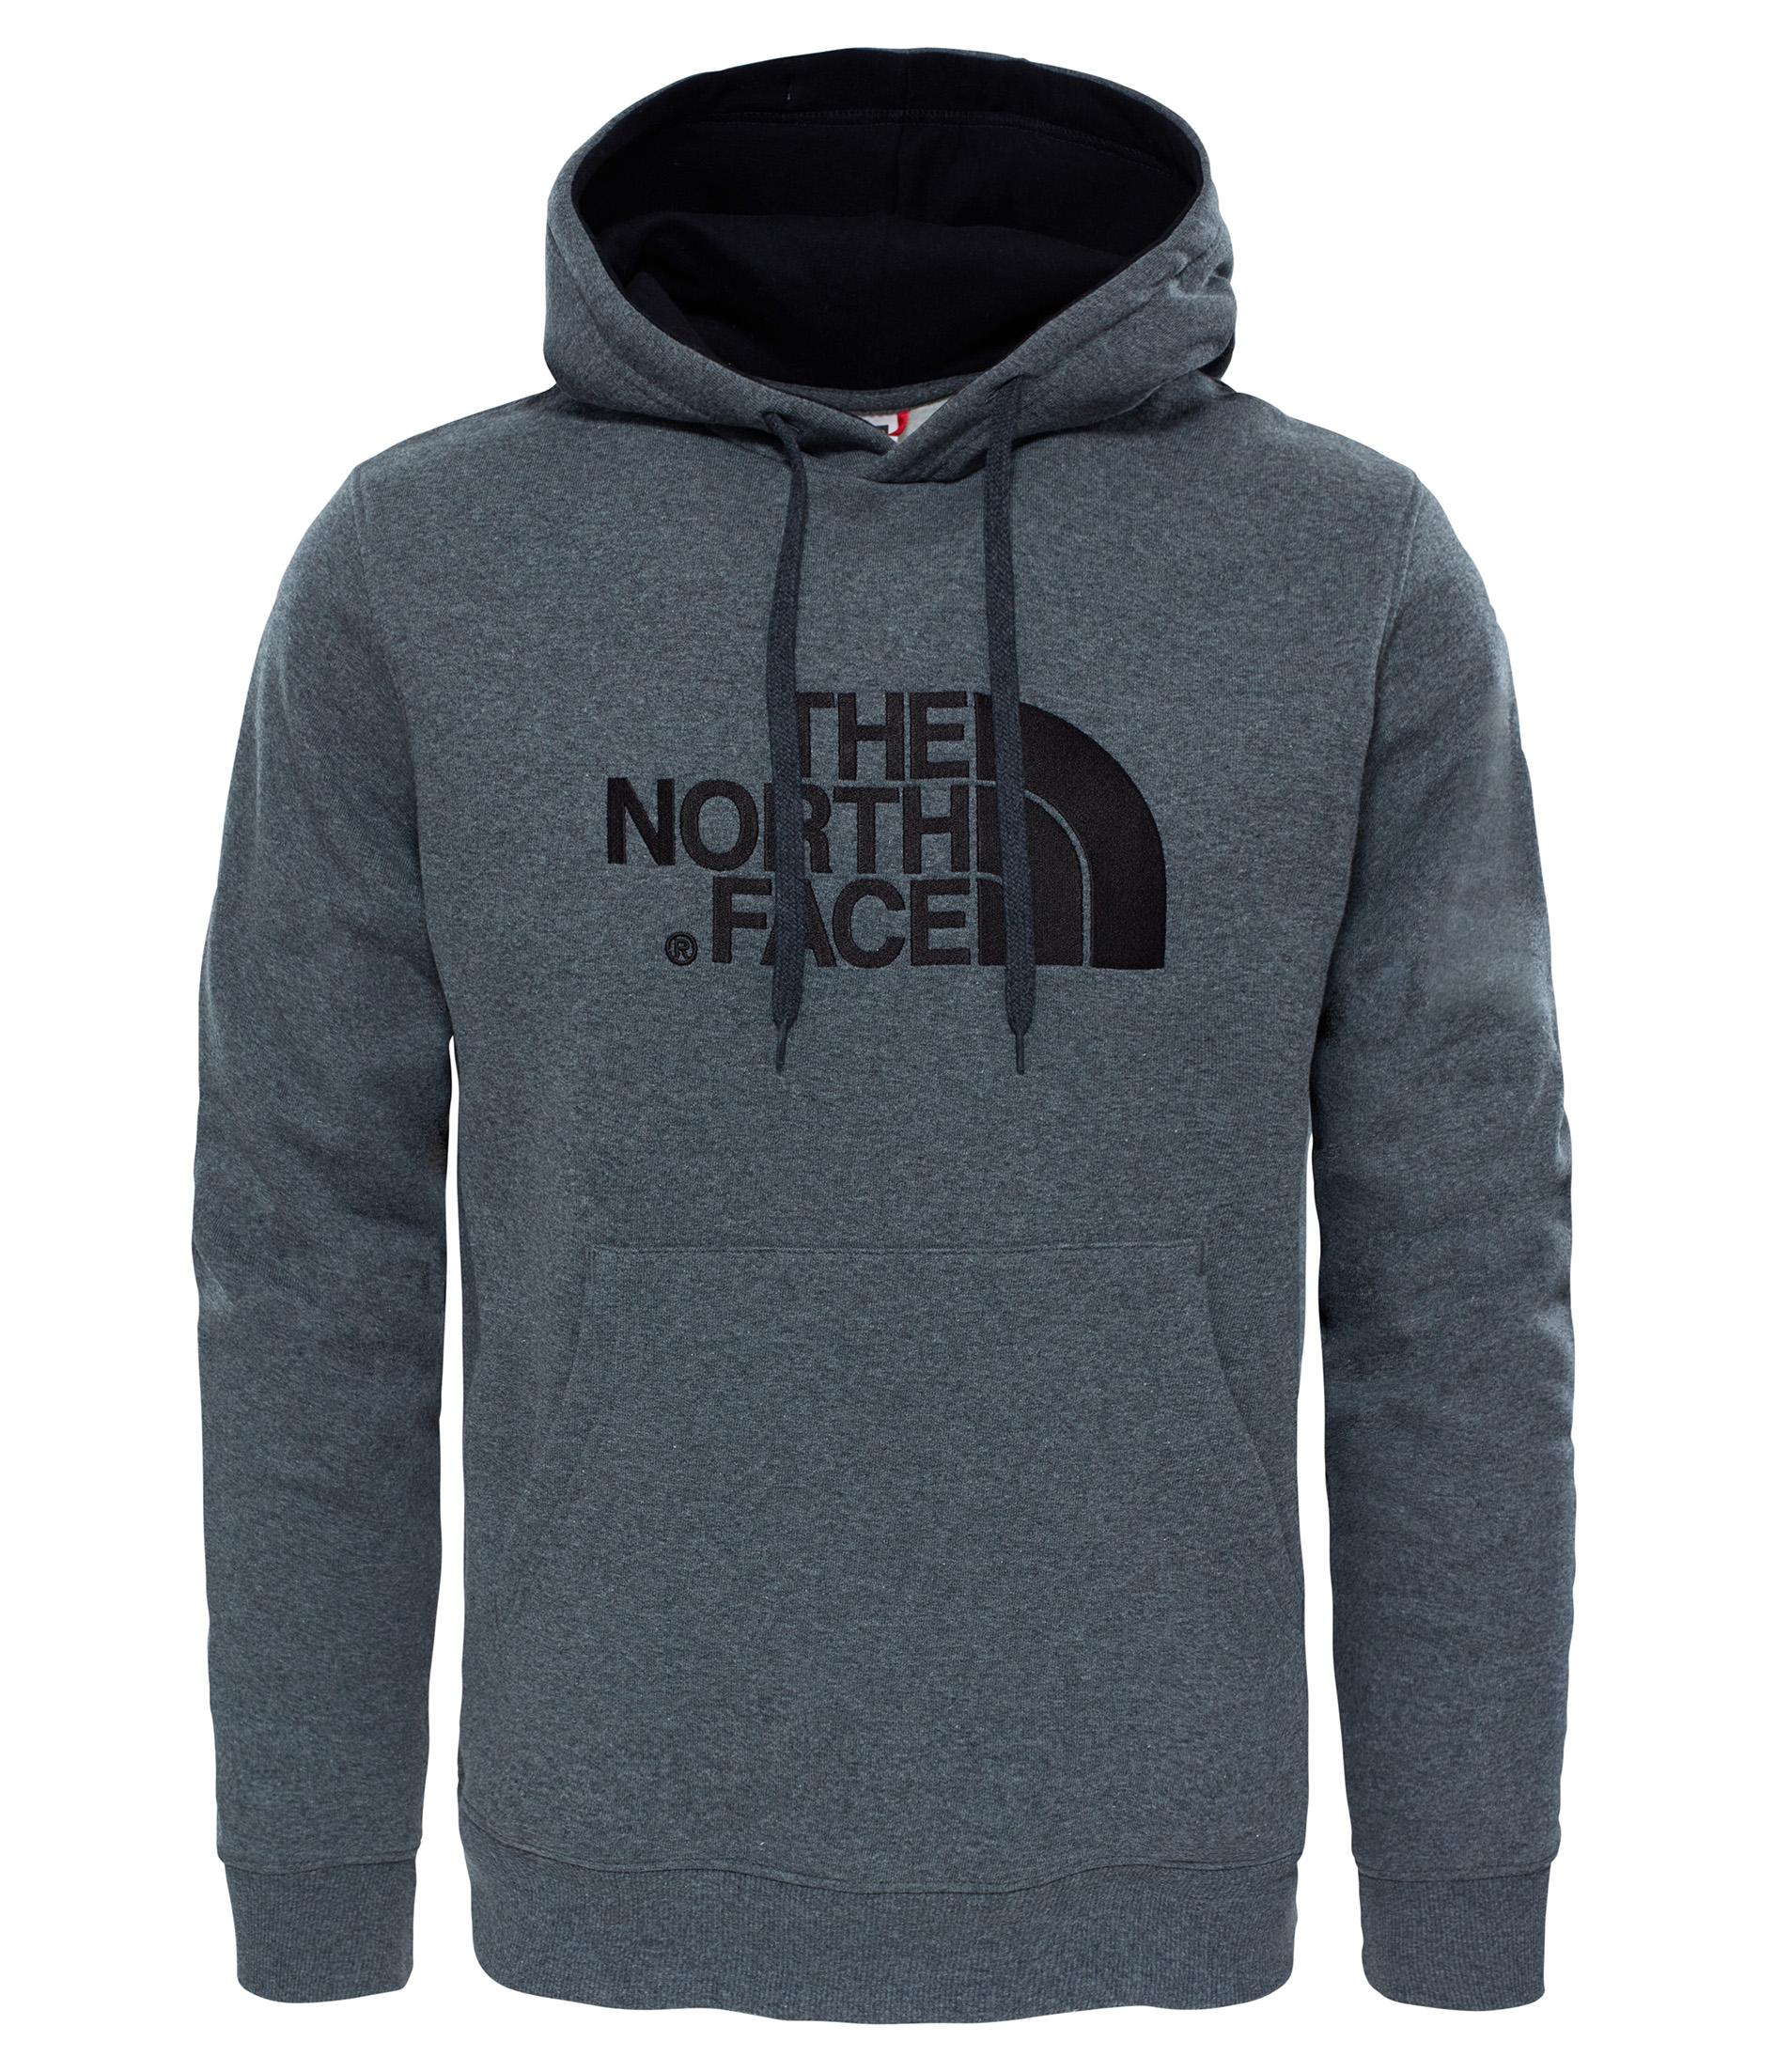 The North Face Drew Peak Pullover Hoodie - Grey/black